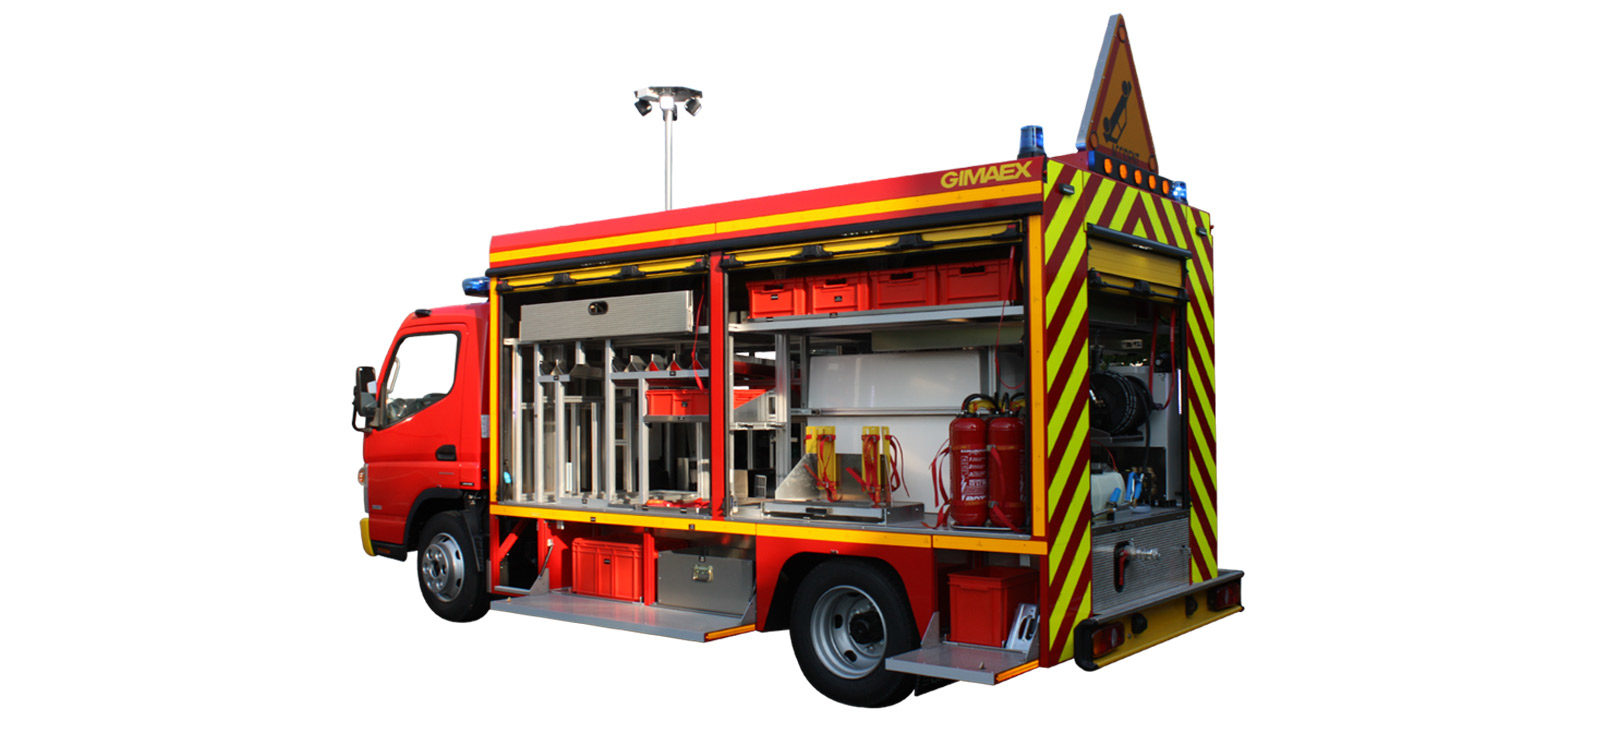 Véhicule de secours Routier - VSR - Desautel Fire Trucks